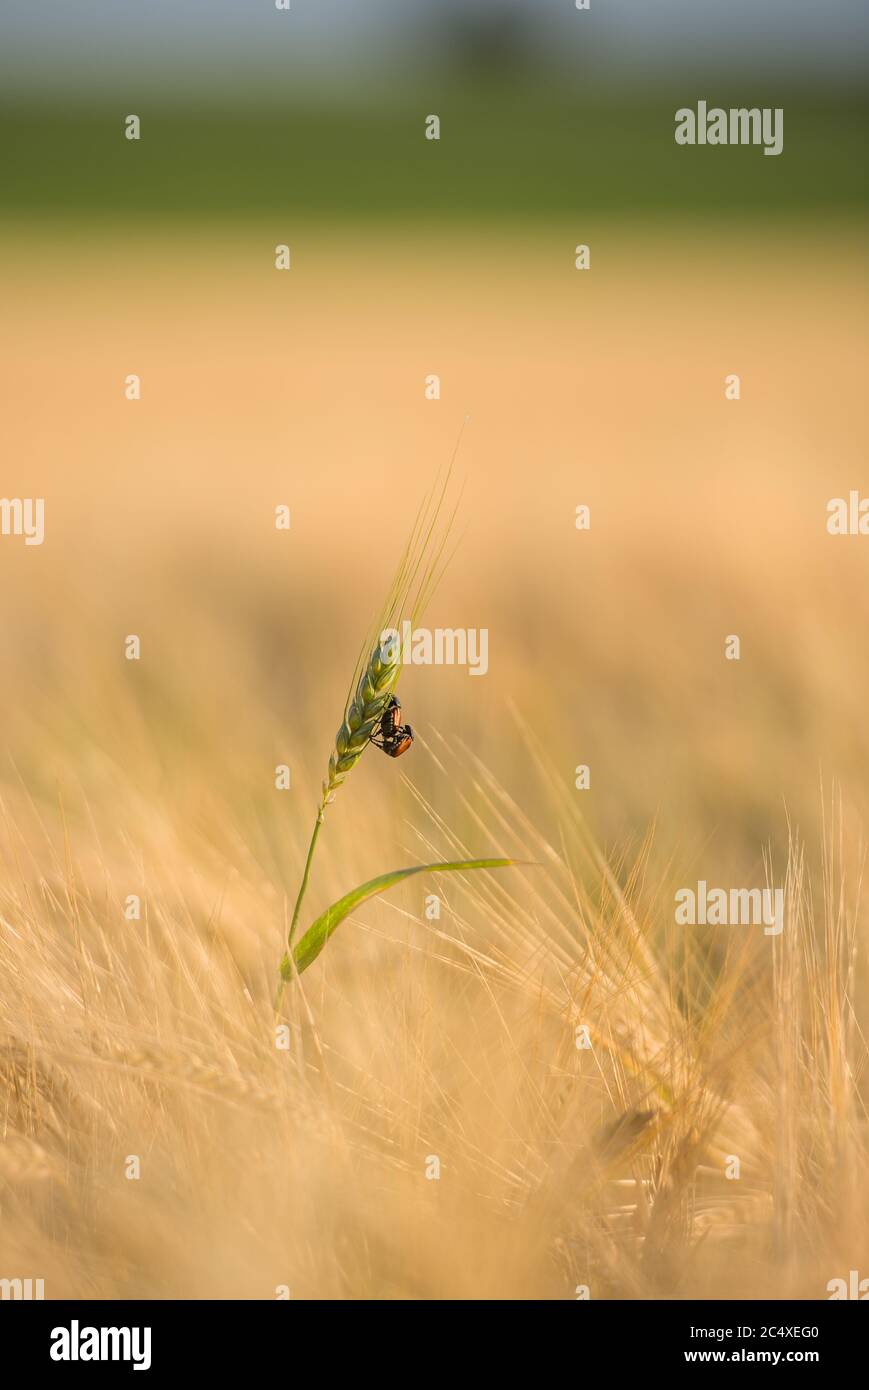 zwei Käfer übereinander auf einer Ähre im Getreidefeld Banque D'Images